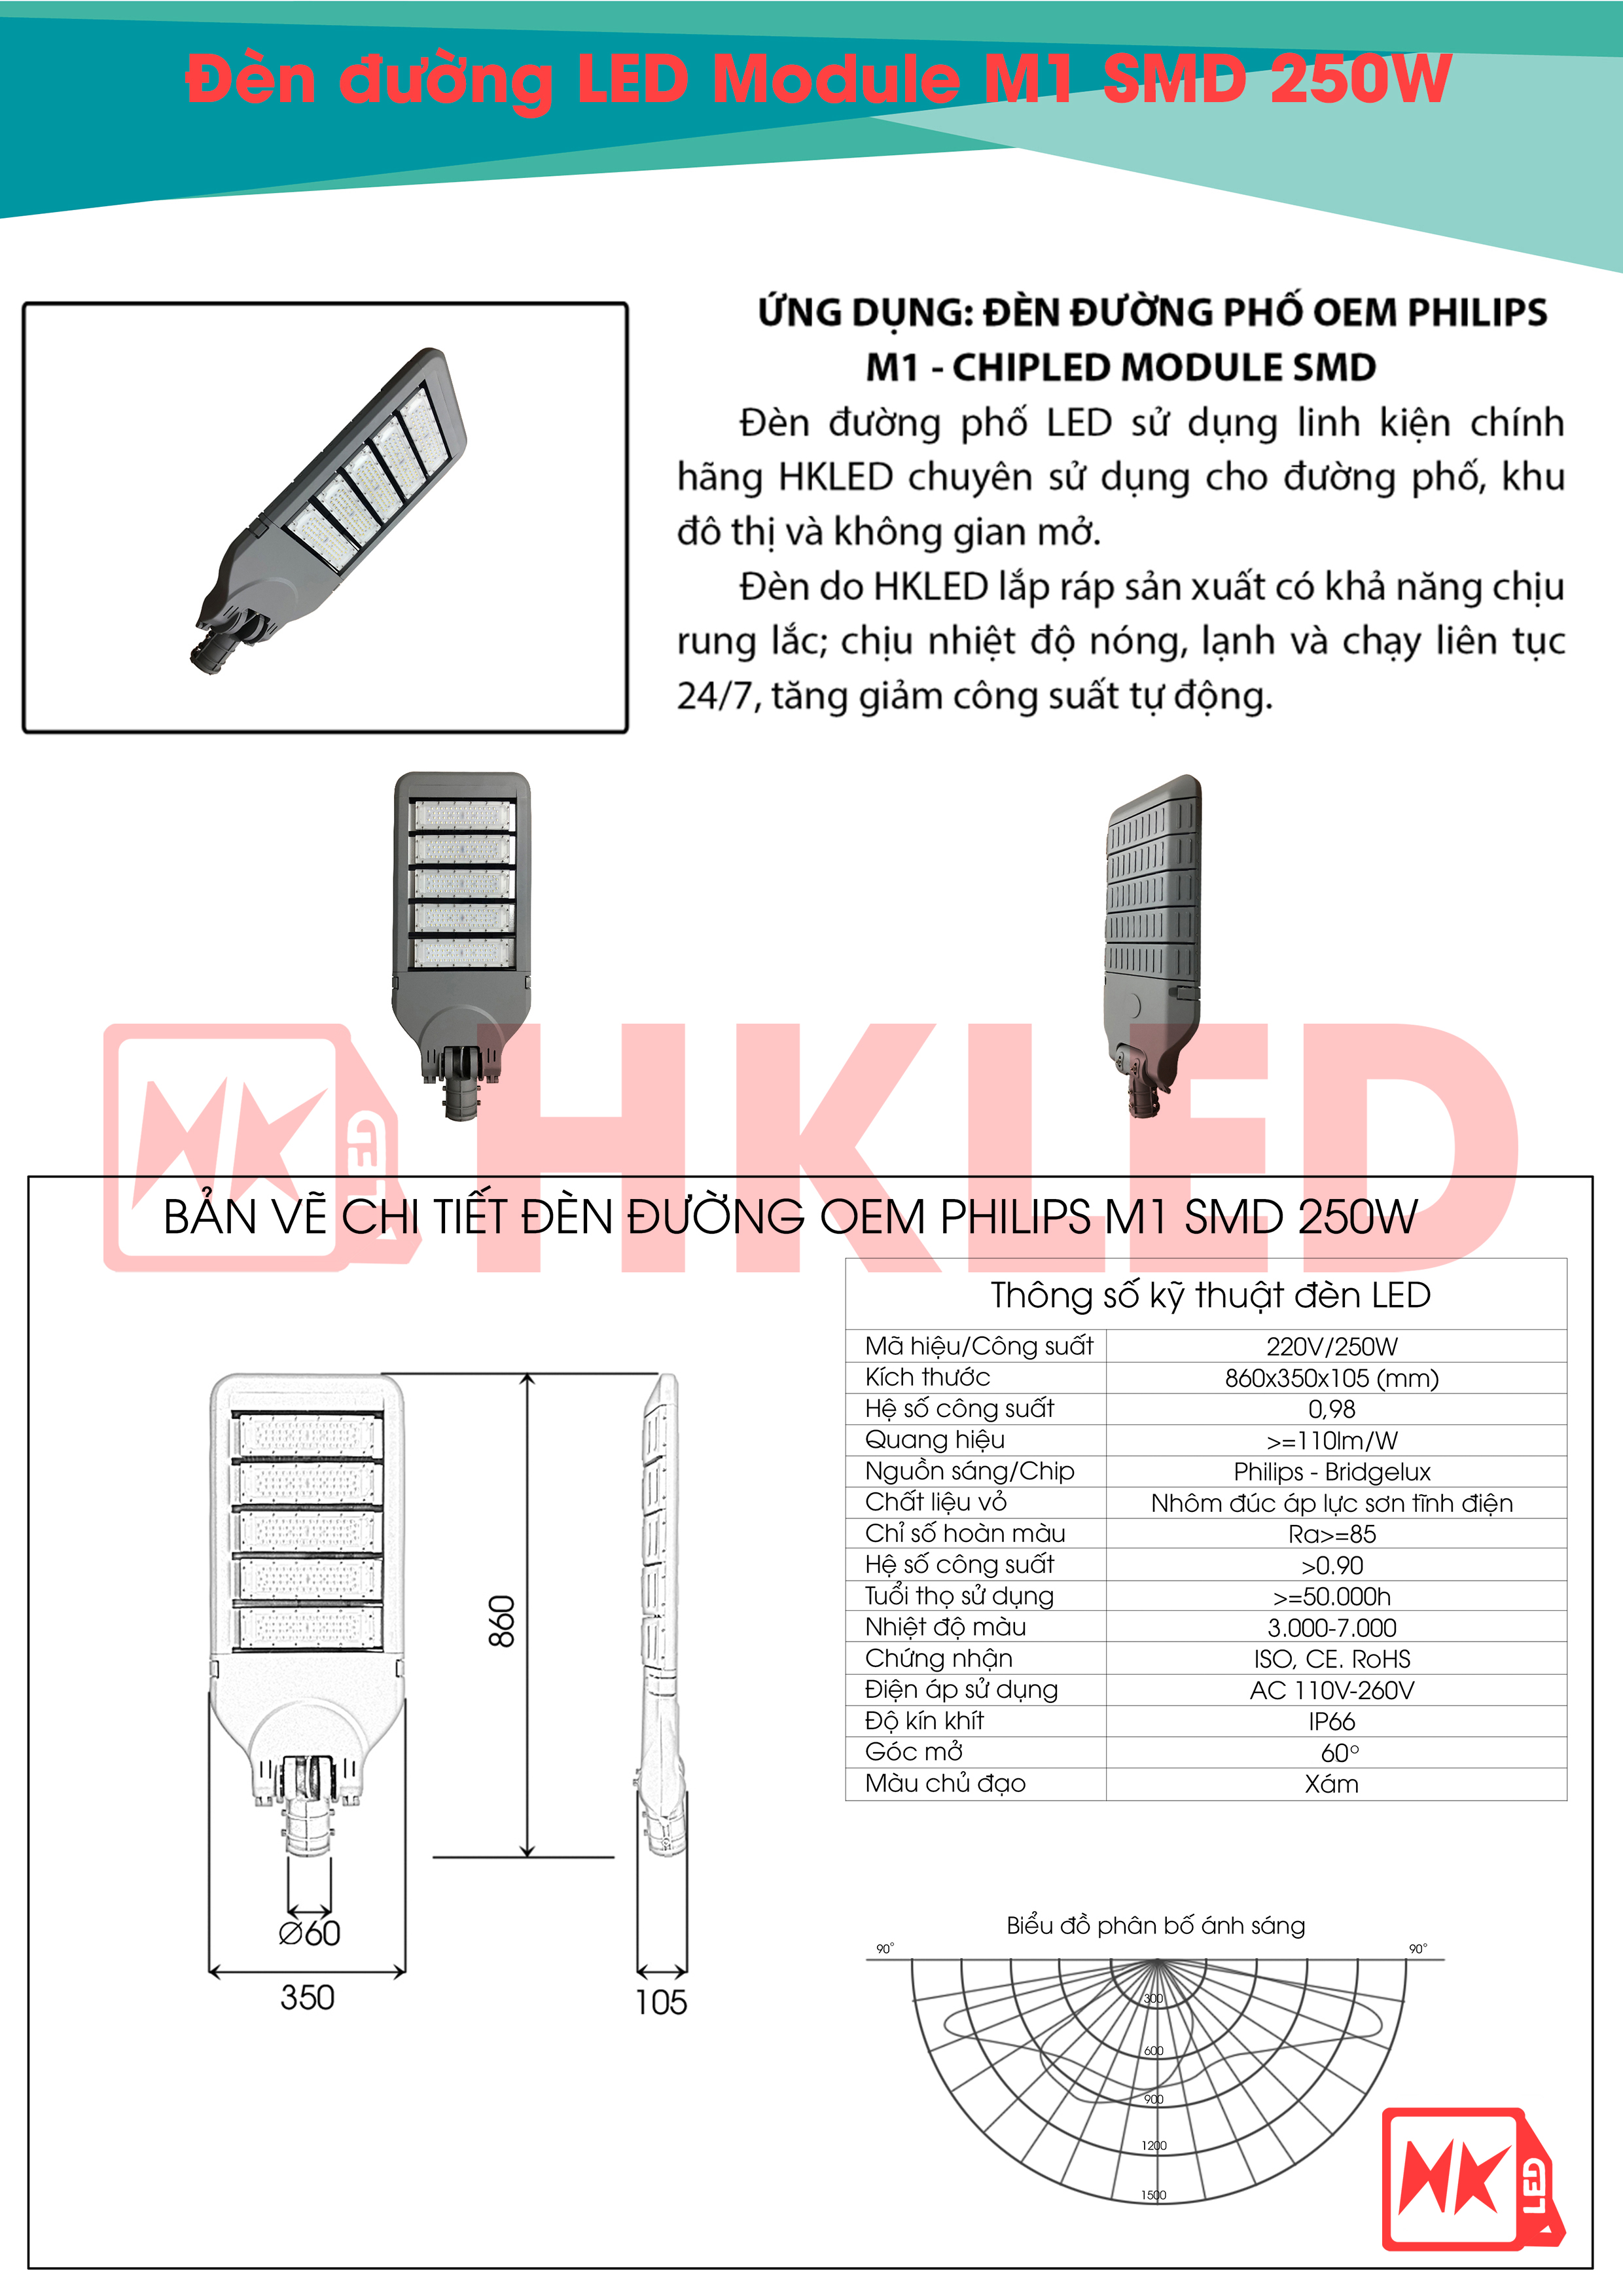 Ứng dụng, bản vẽ chi tiết và thông số kỹ thuật đèn đường LED OEM Philips M1 Module SMD 250W